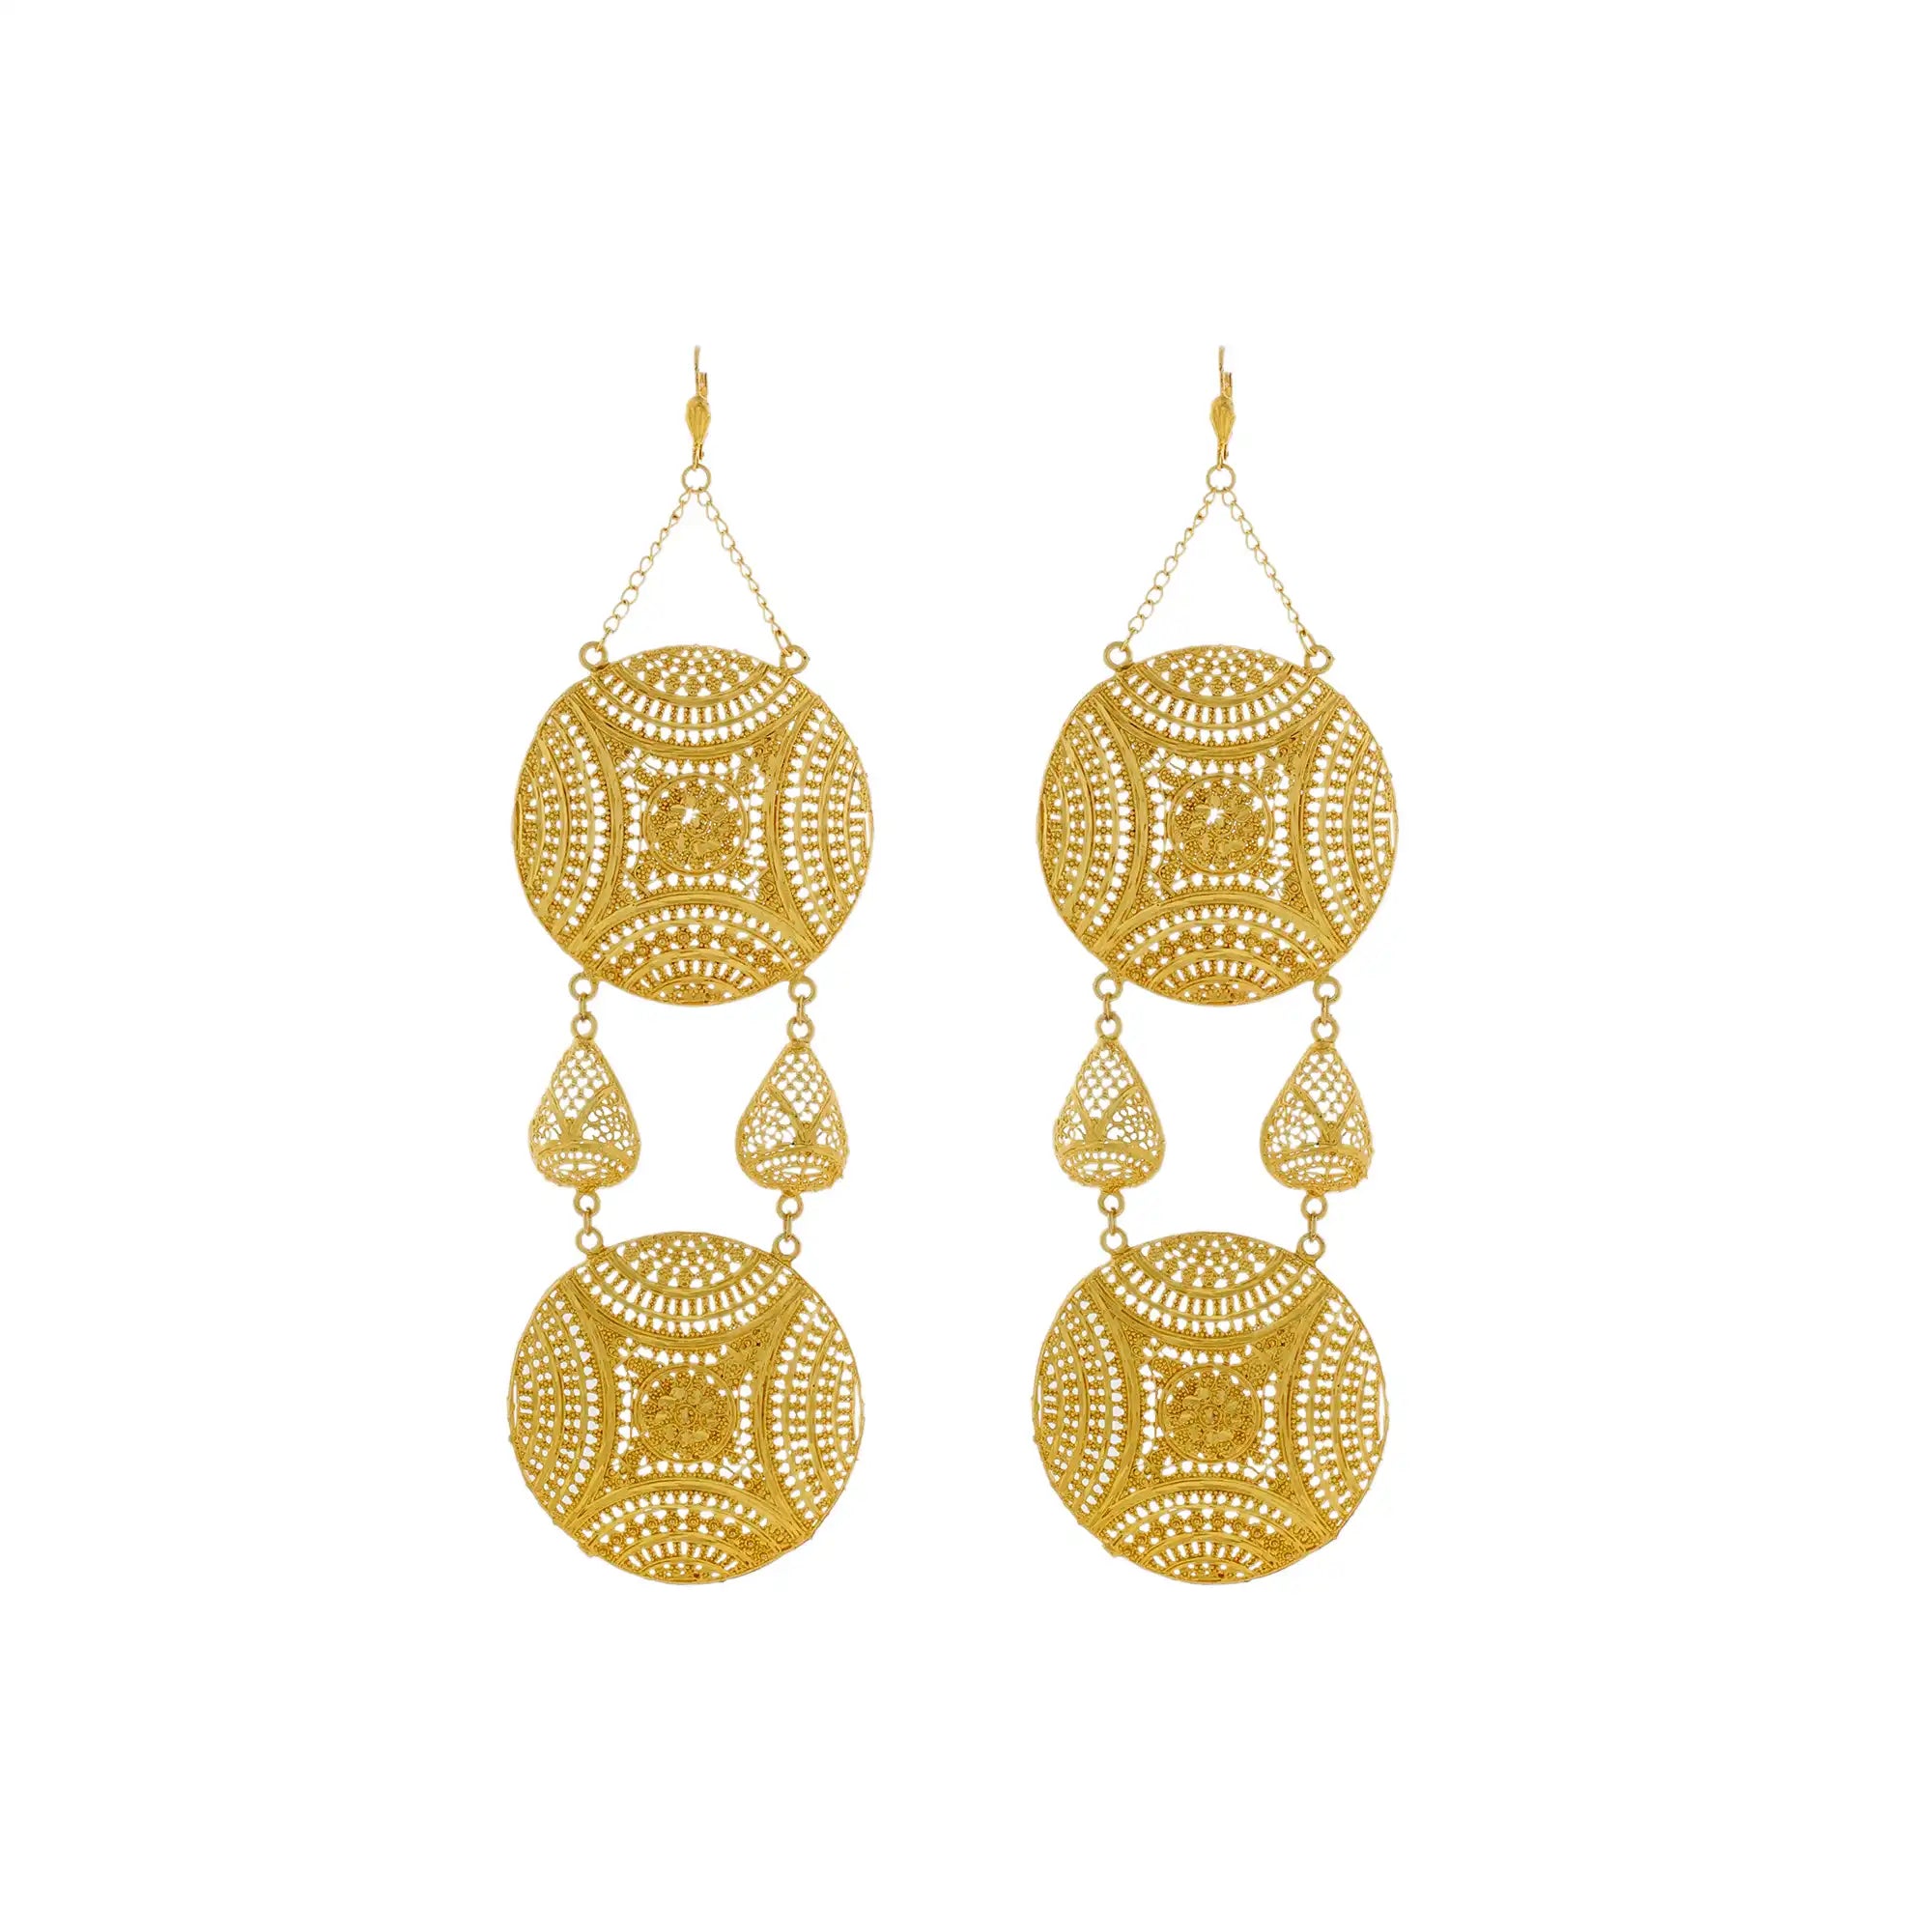 Statement Earrings, Long Gold Earrings, Indian Weddings Jewelry, Gold-Plated Earrings, Indian Jewelry Mall